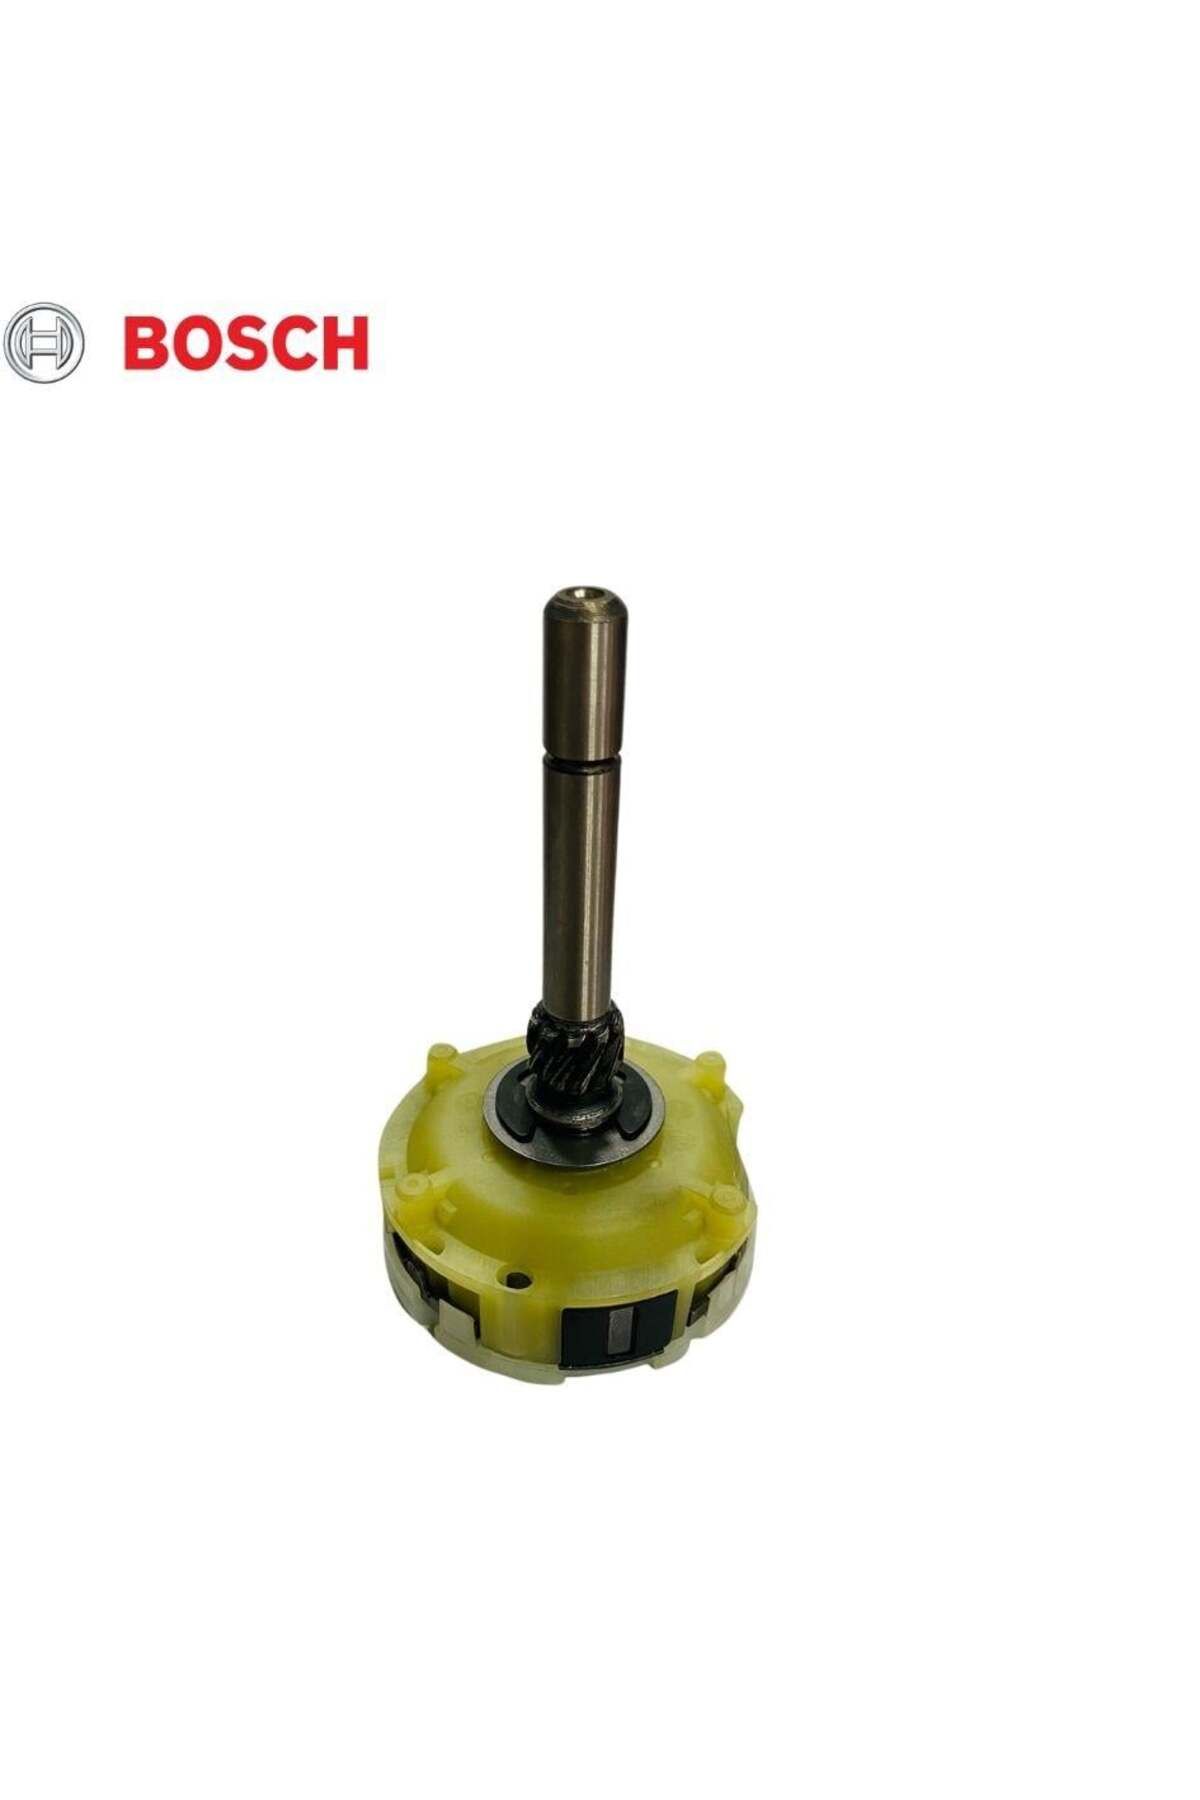 Bosch Marş Redüktör Dişli Mili (PLANET) (DEMİRLİ) (0001 109)